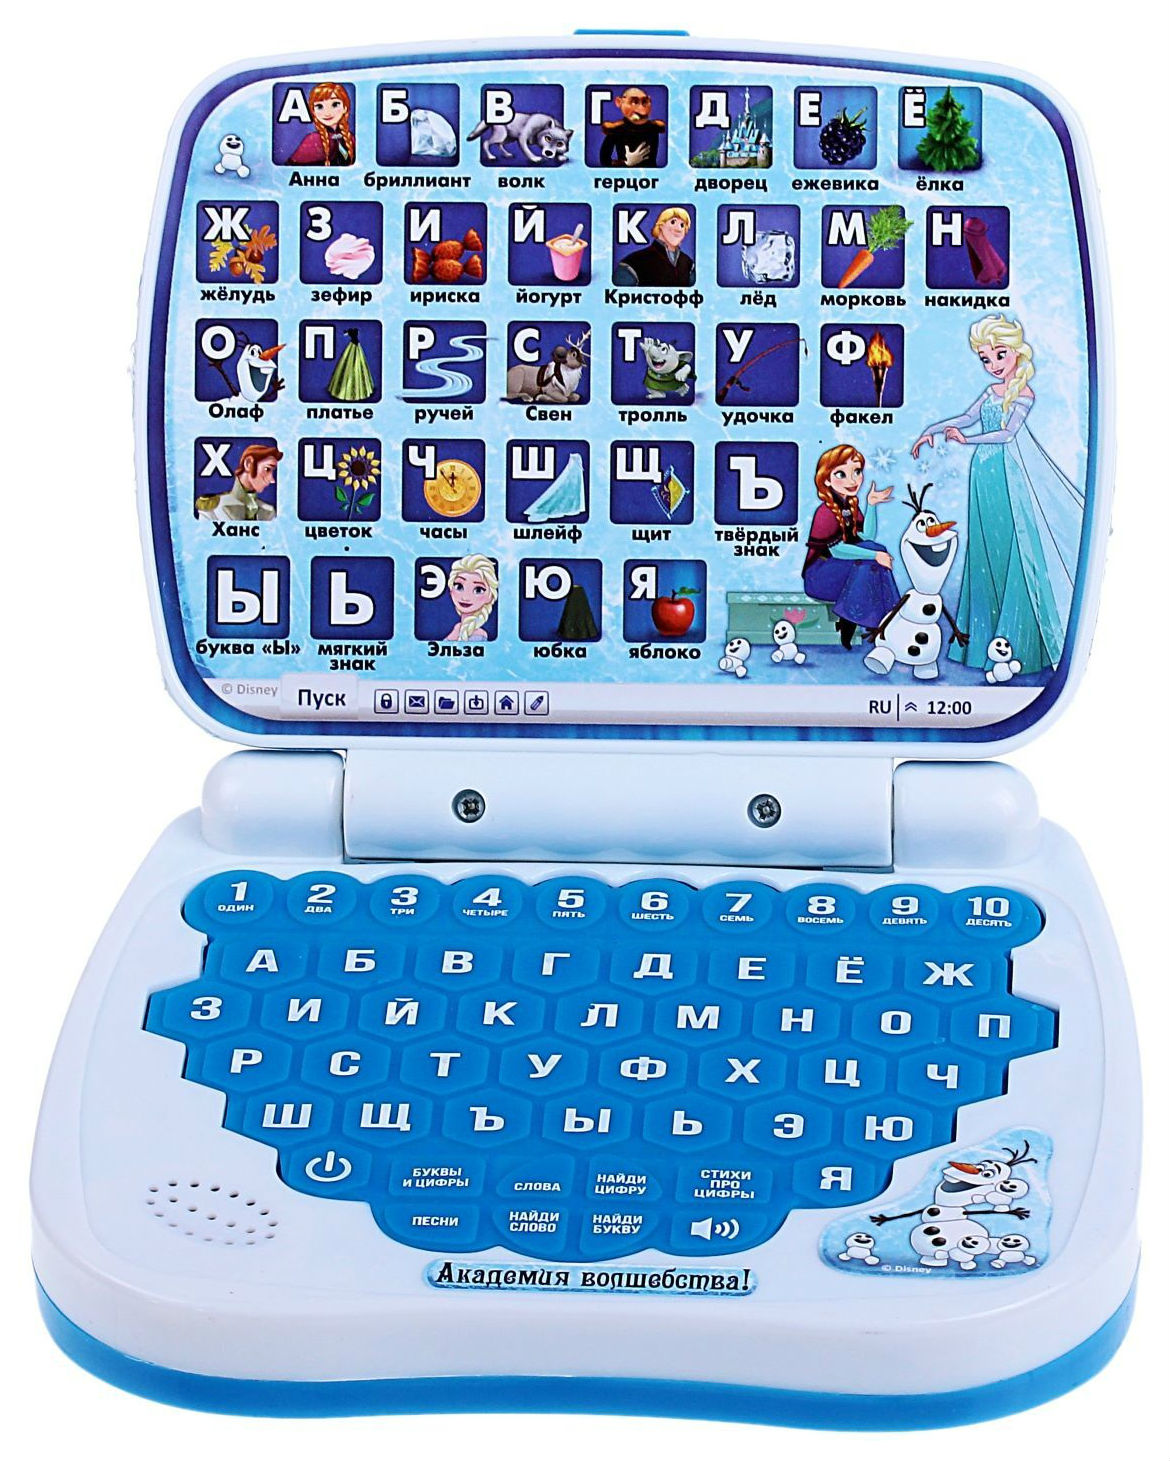 Детский компьютер 